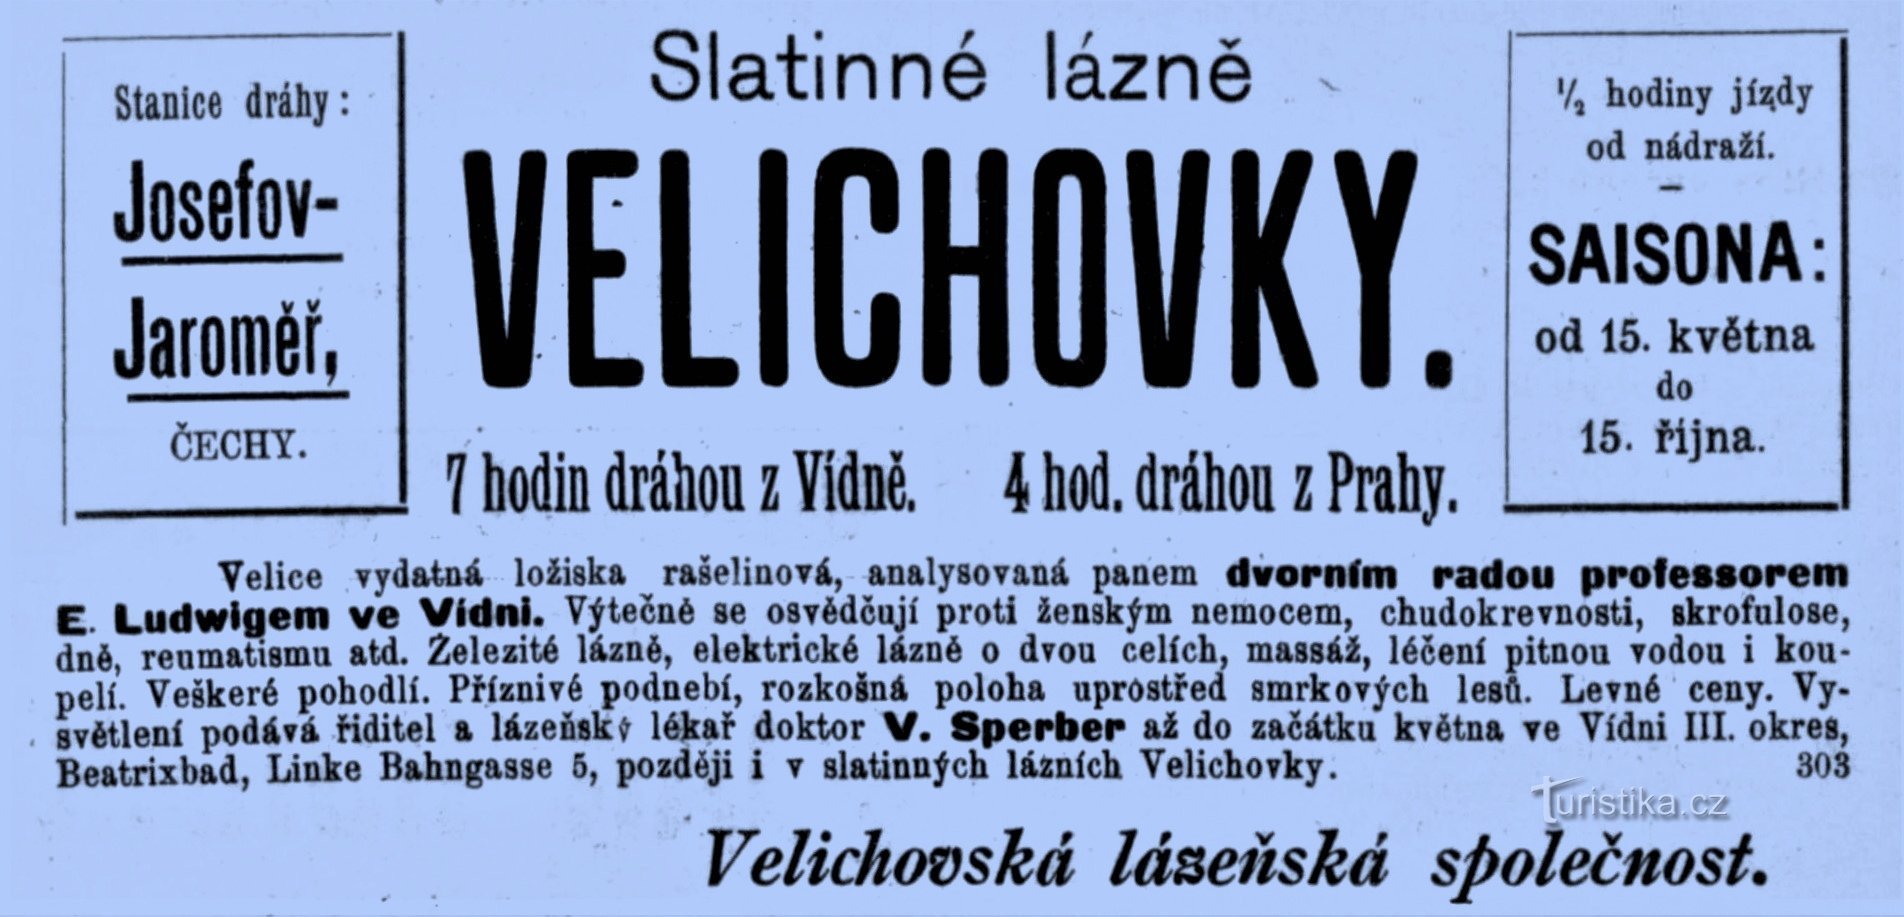 Annonce for spaen i Velichovky fra 1898